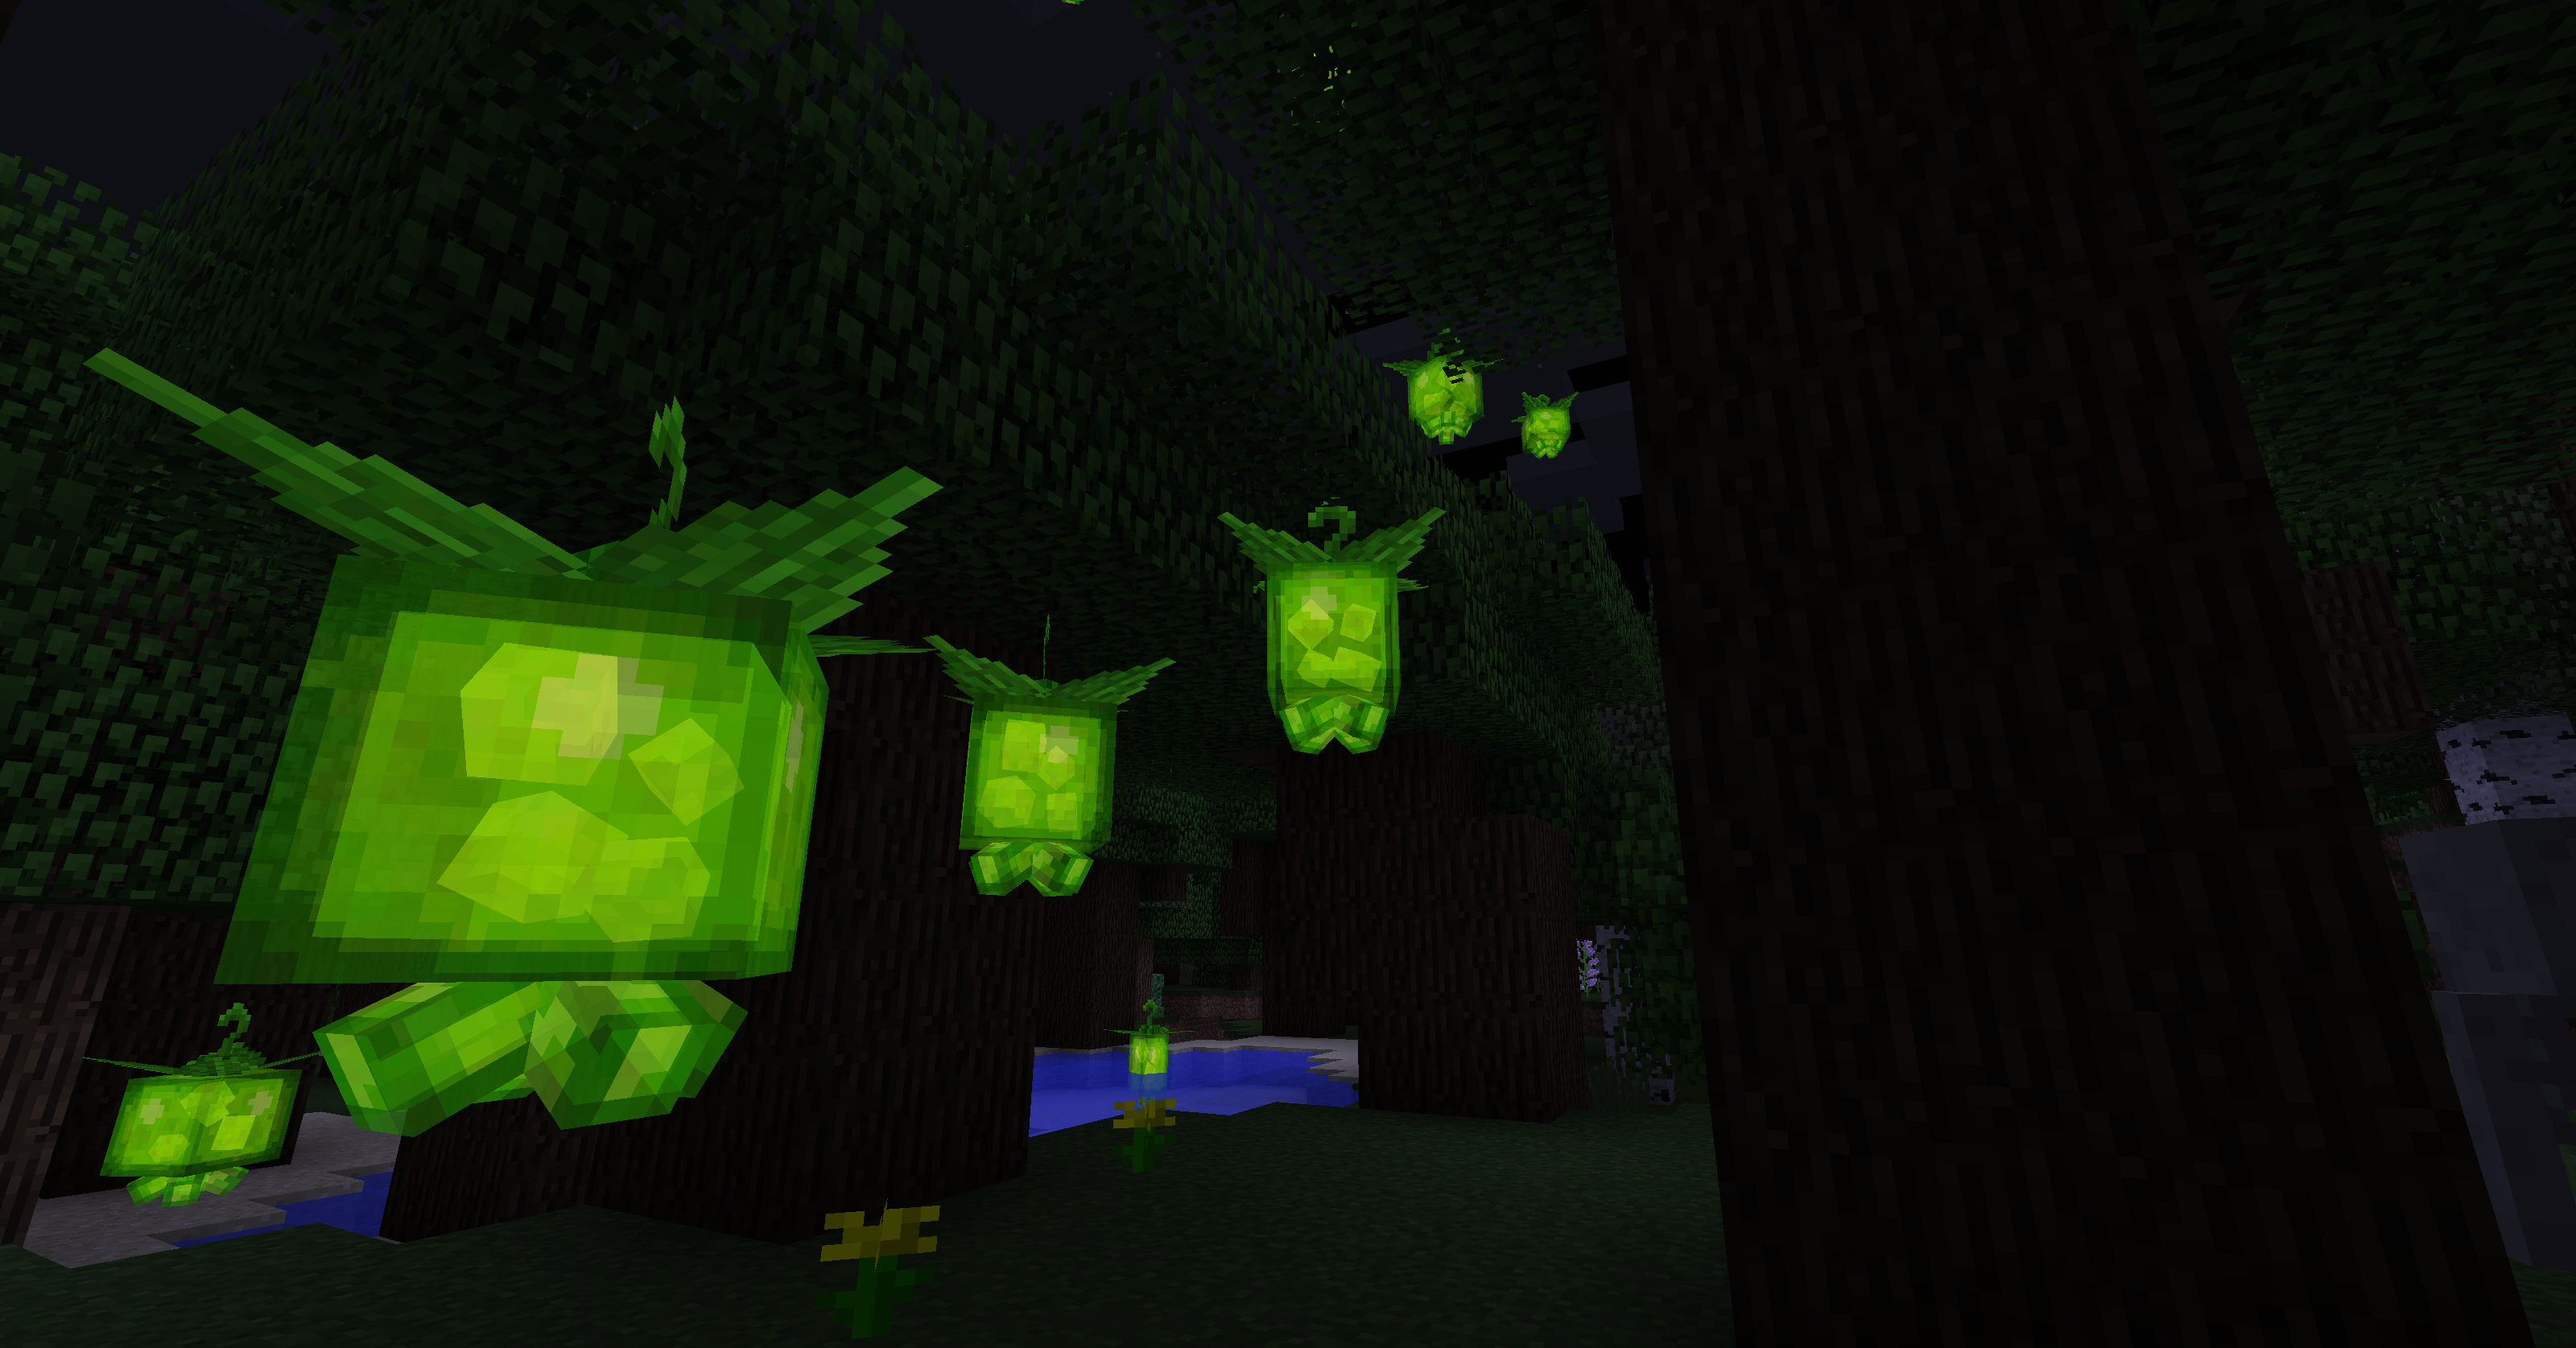 Des lanternes dans une forêt sombre